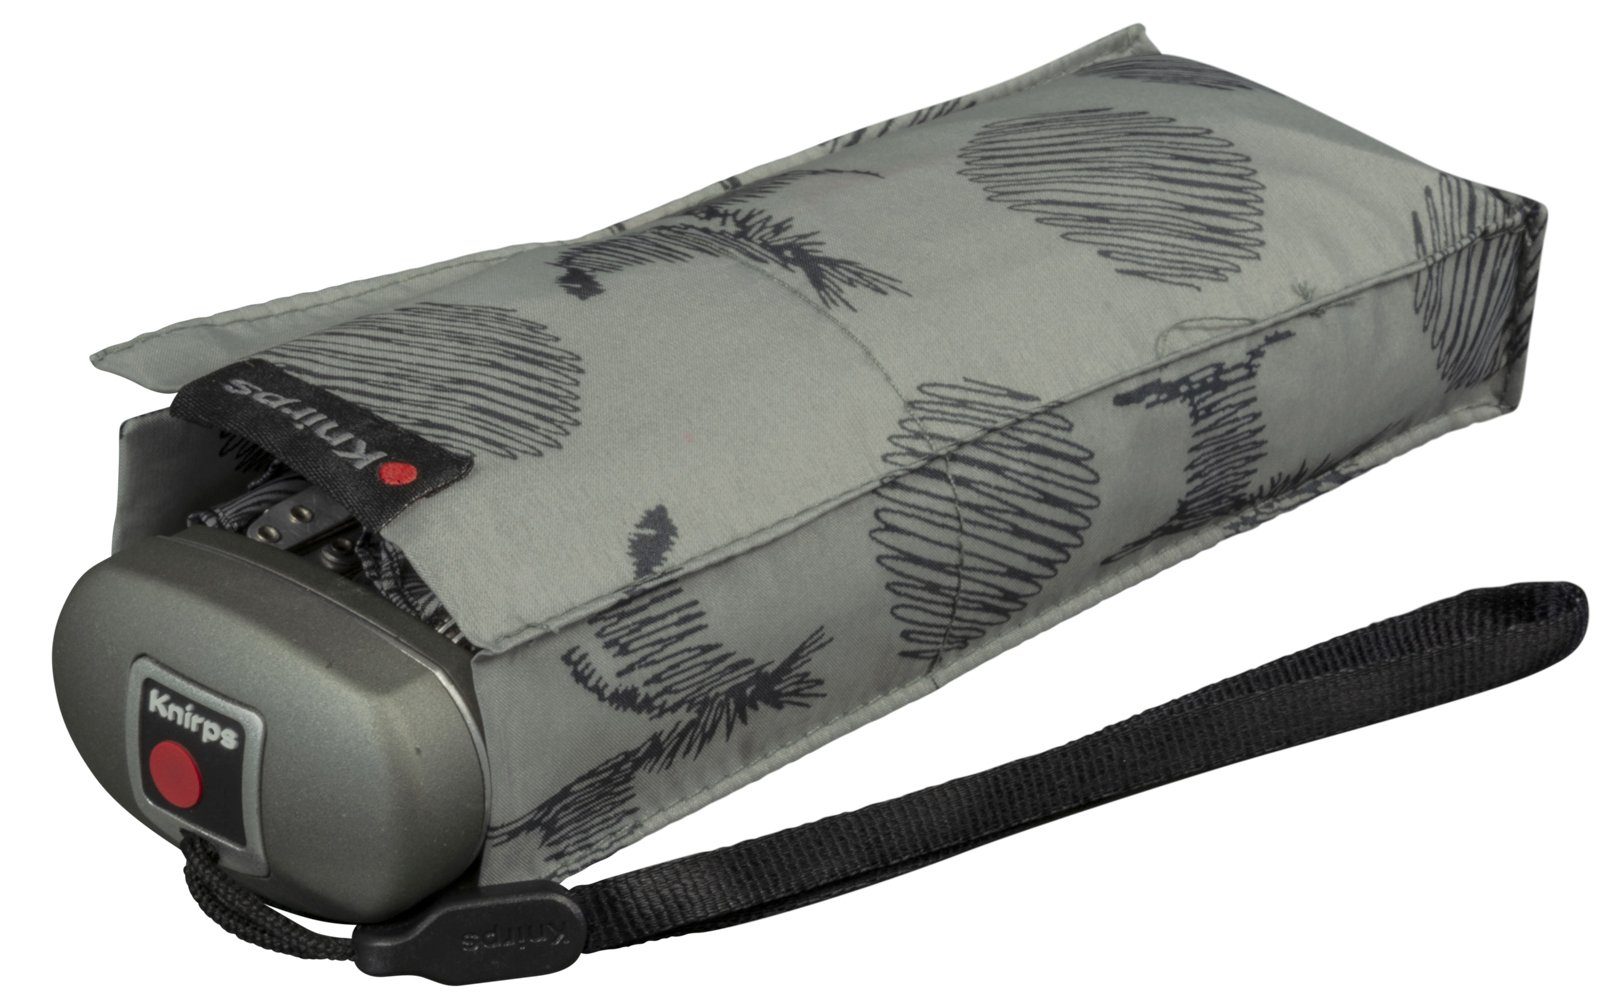 flach, und für Damen-Taschenschirm, - Christina Handtasche Taschenregenschirm die leicht Knirps® grey Travel winziger